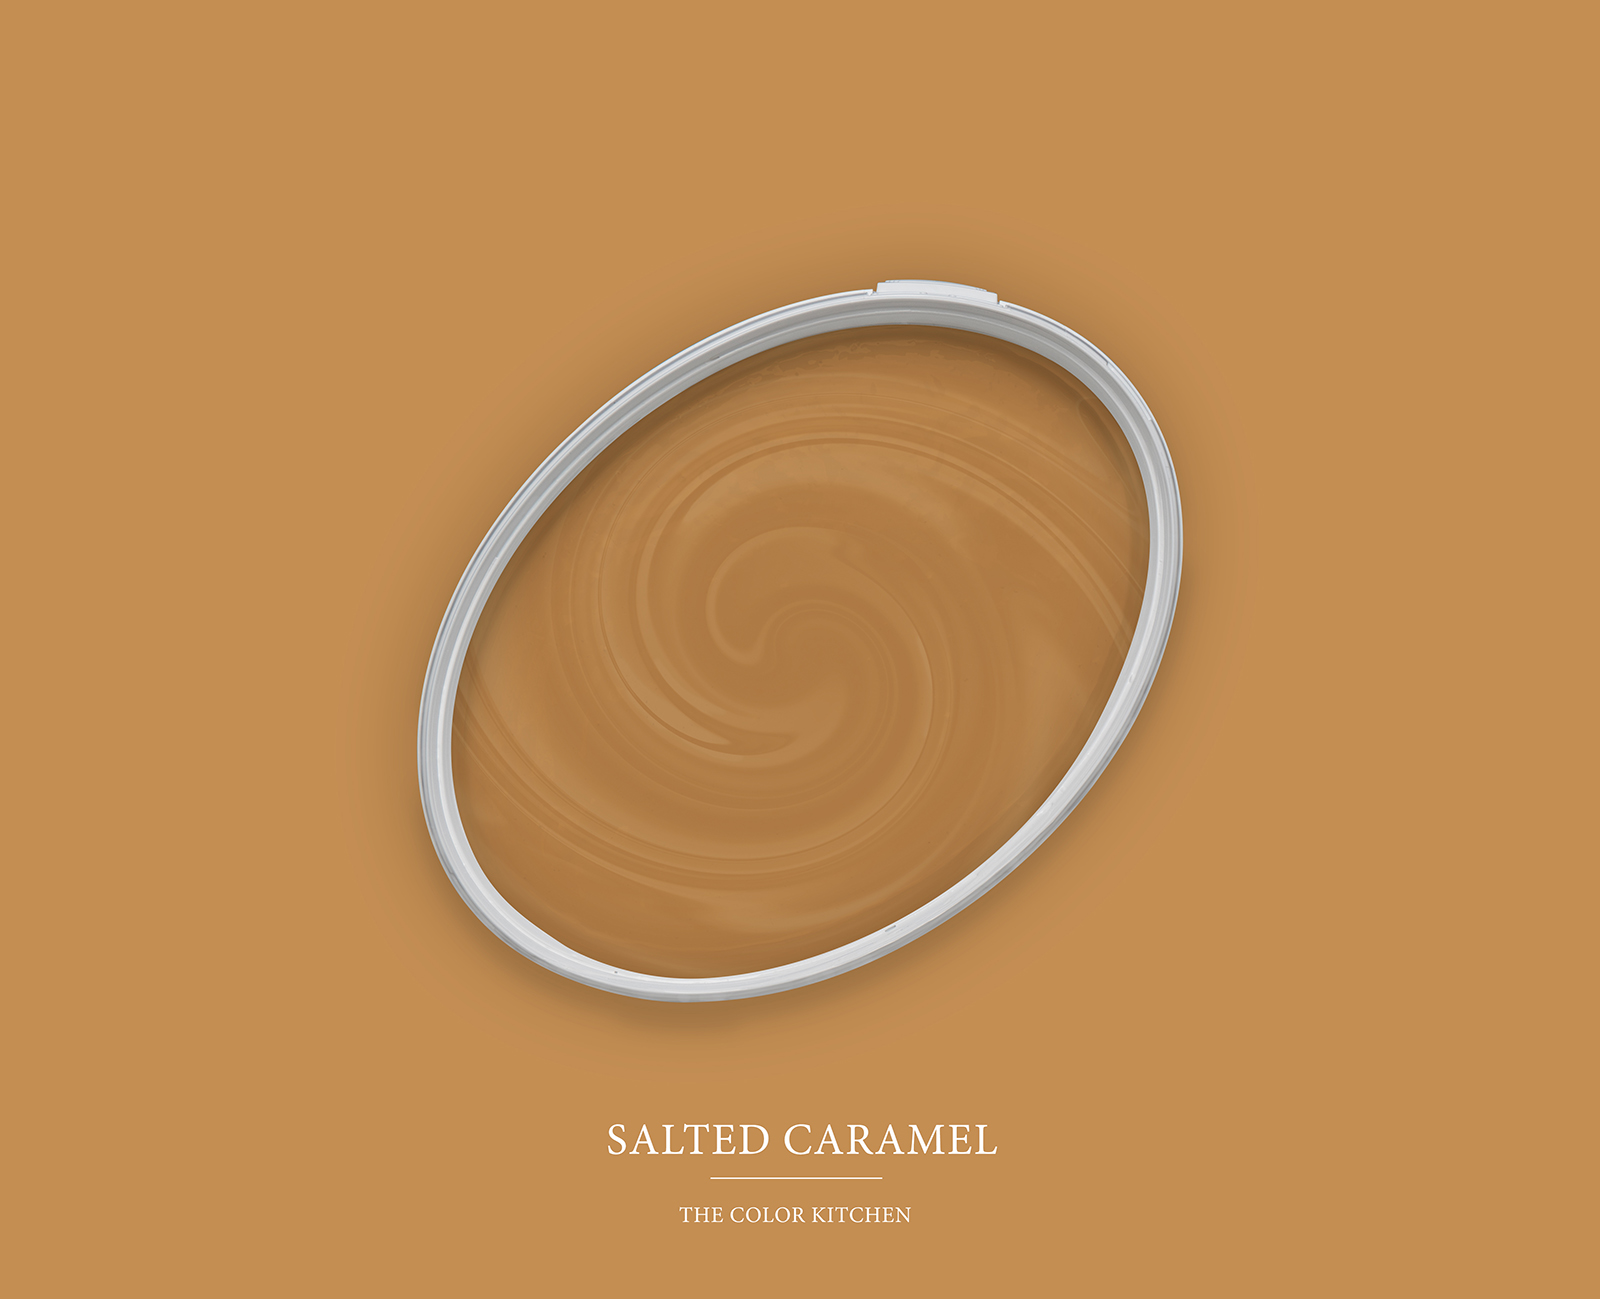         Wall Paint TCK5007 »Salted Caramel« in intense caramel – 2.5 litre
    